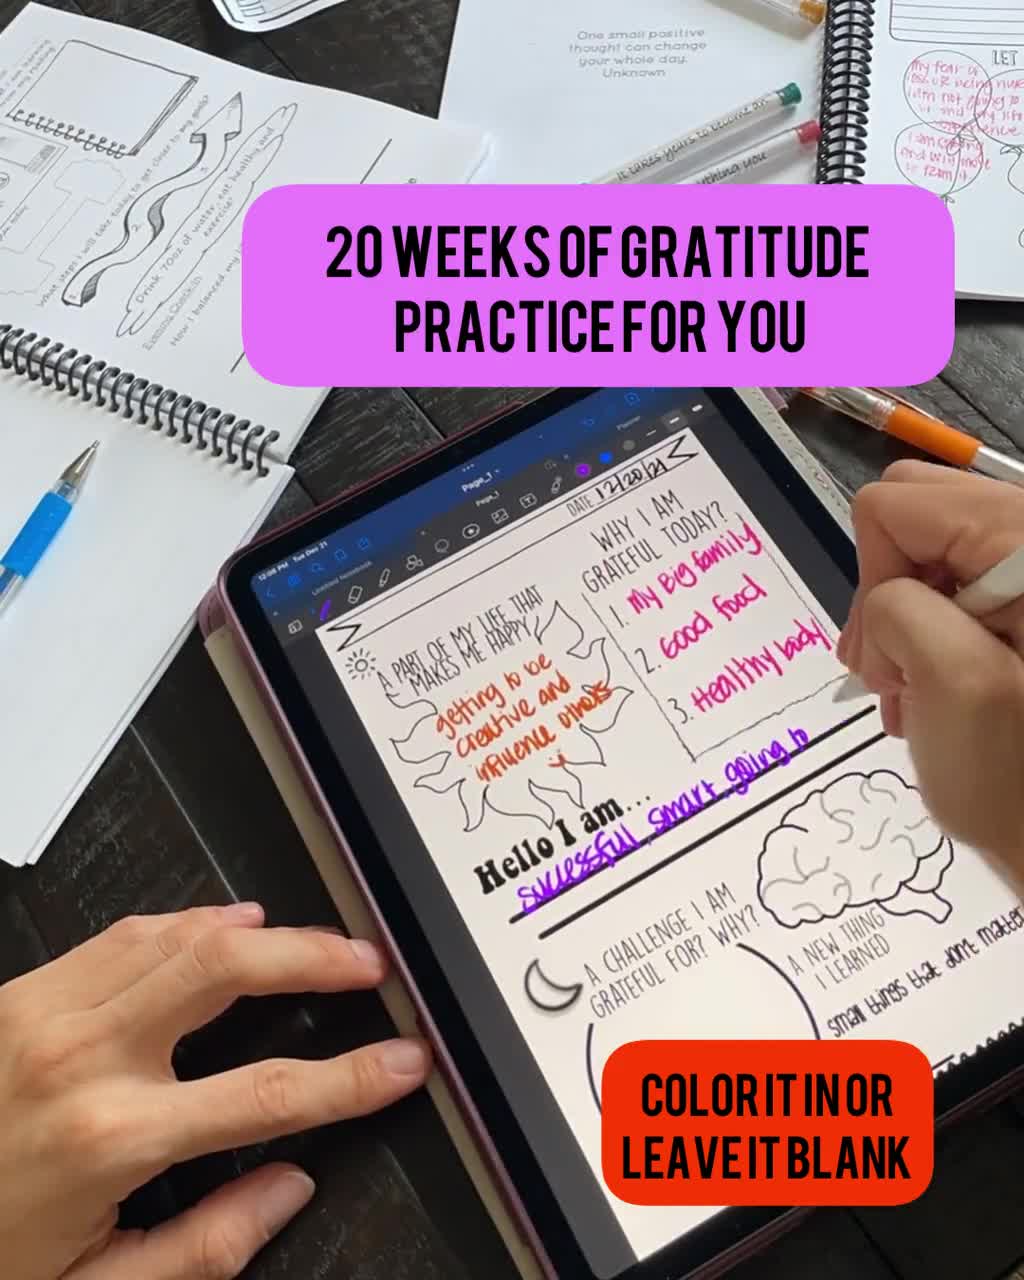 Today I'm Grateful For: Prompted Gratitude Journal Digital